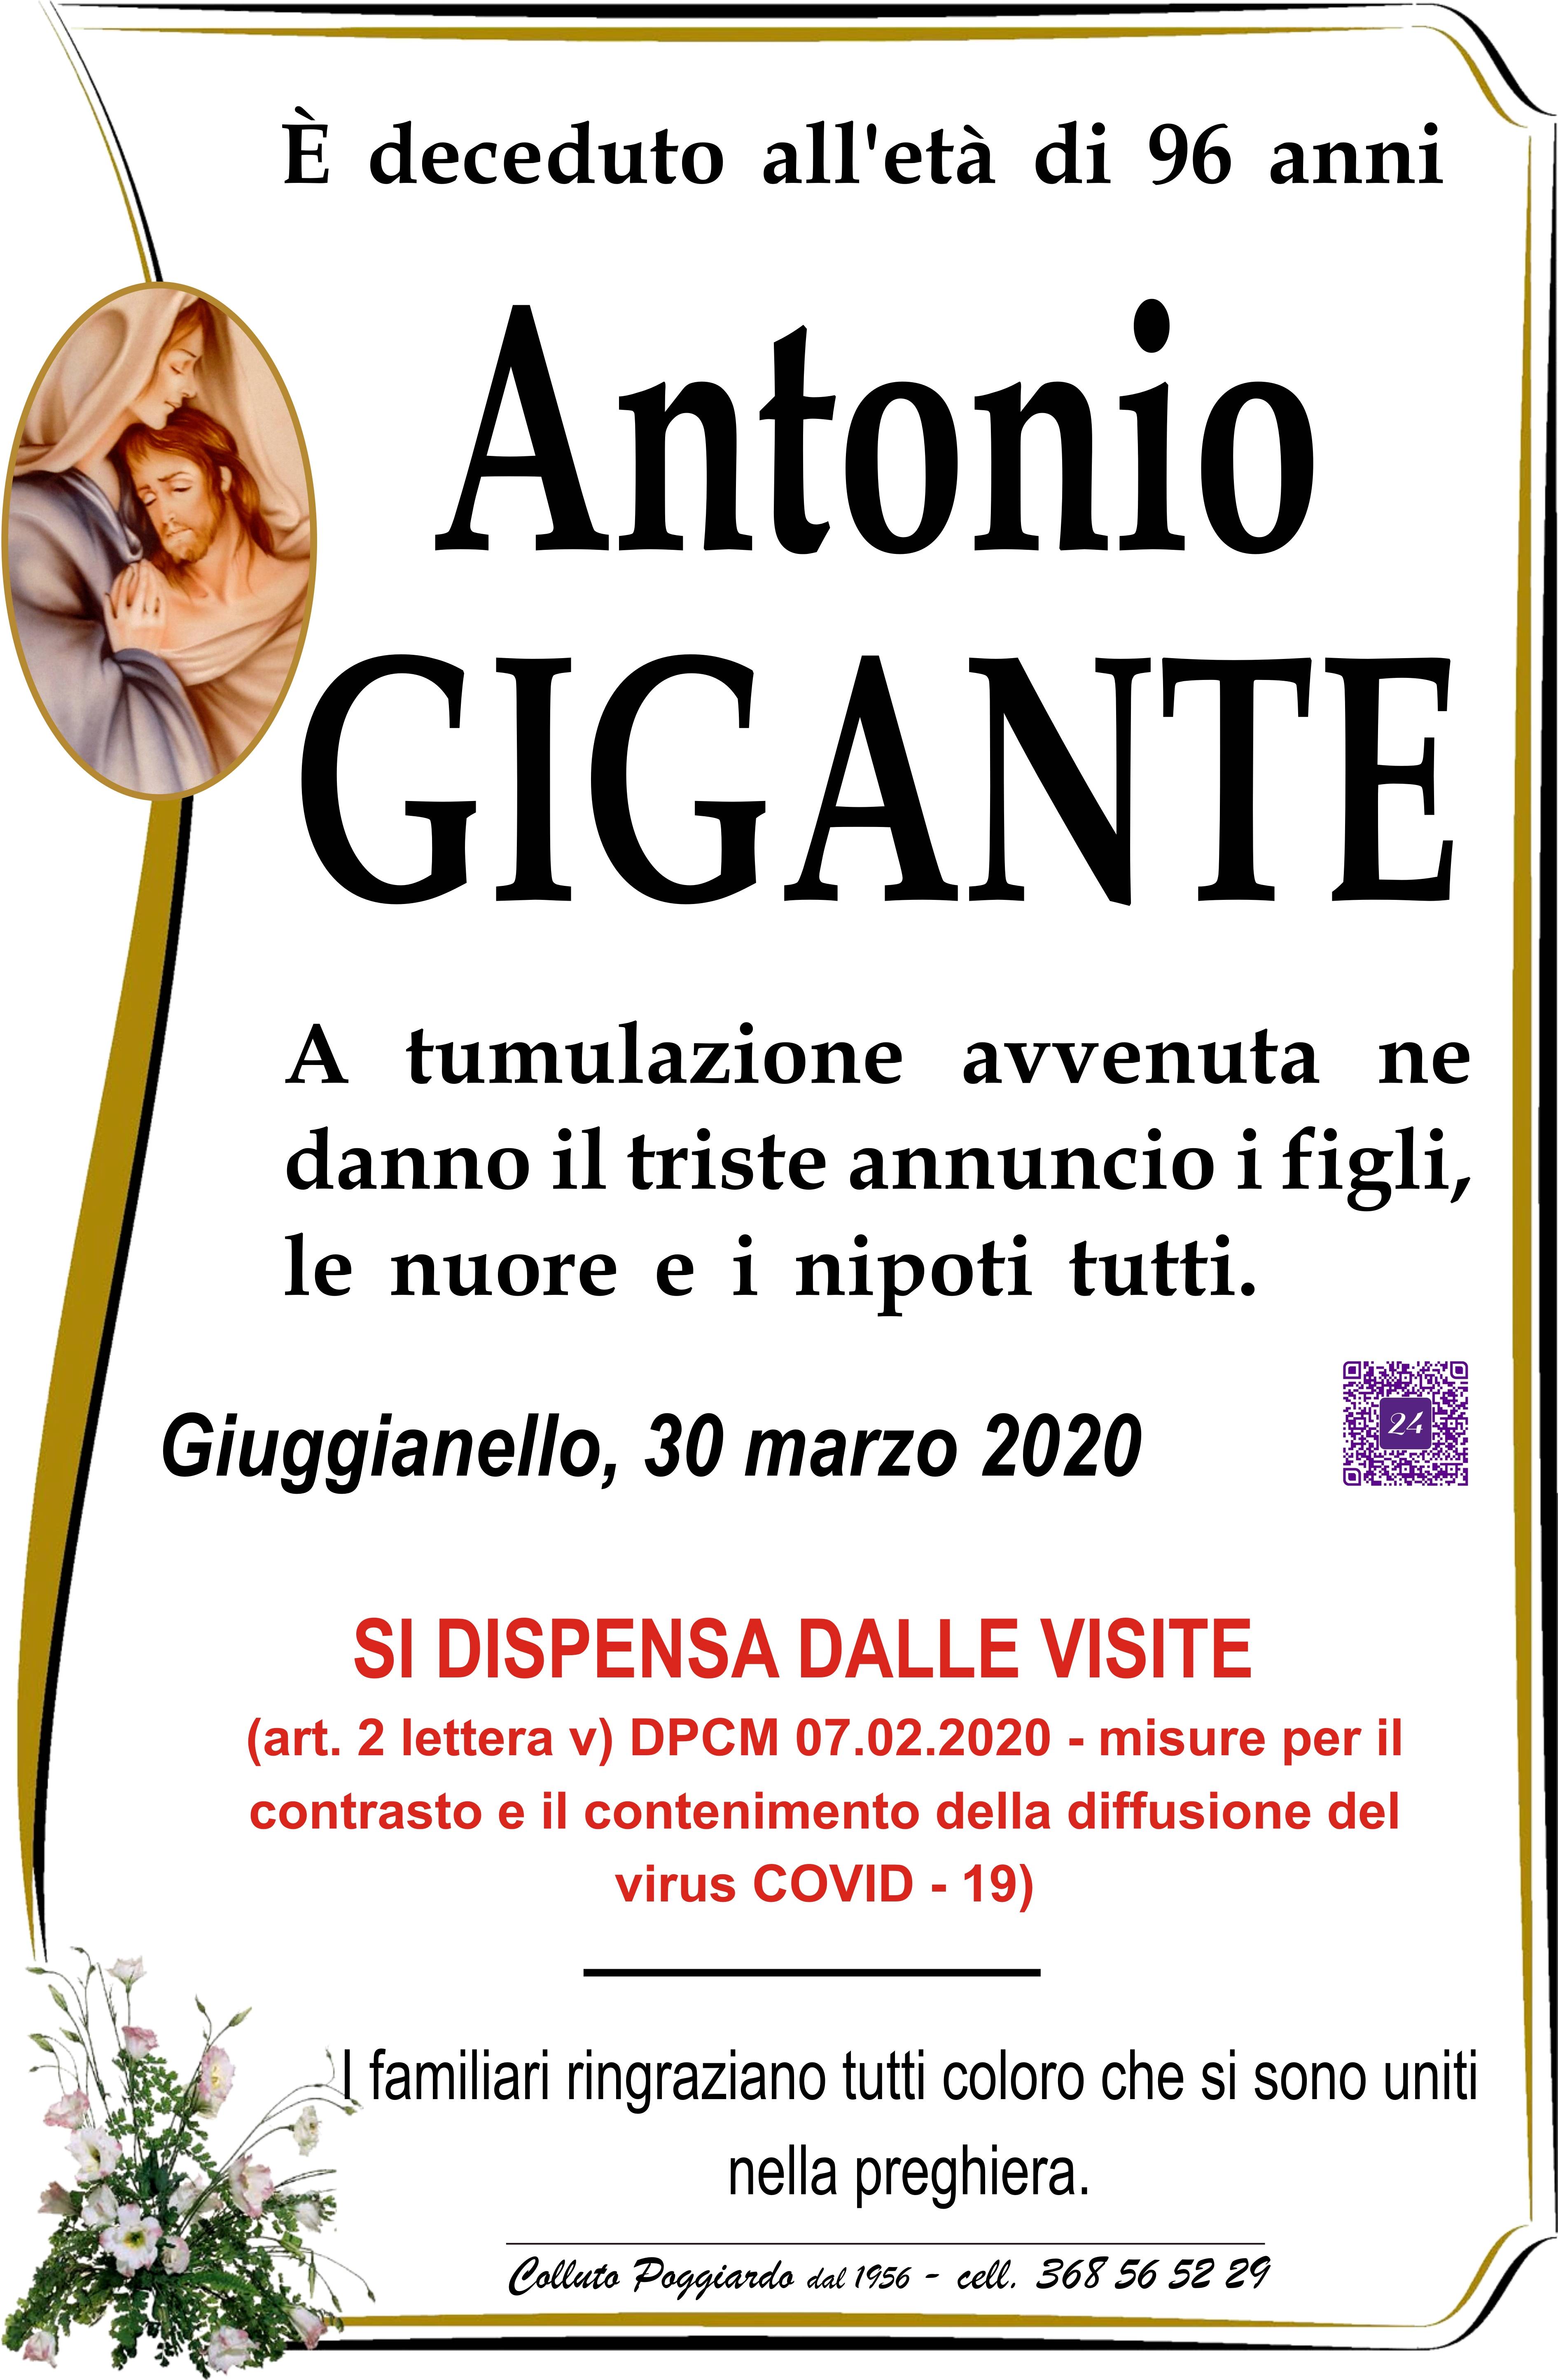 Antonio Gigante